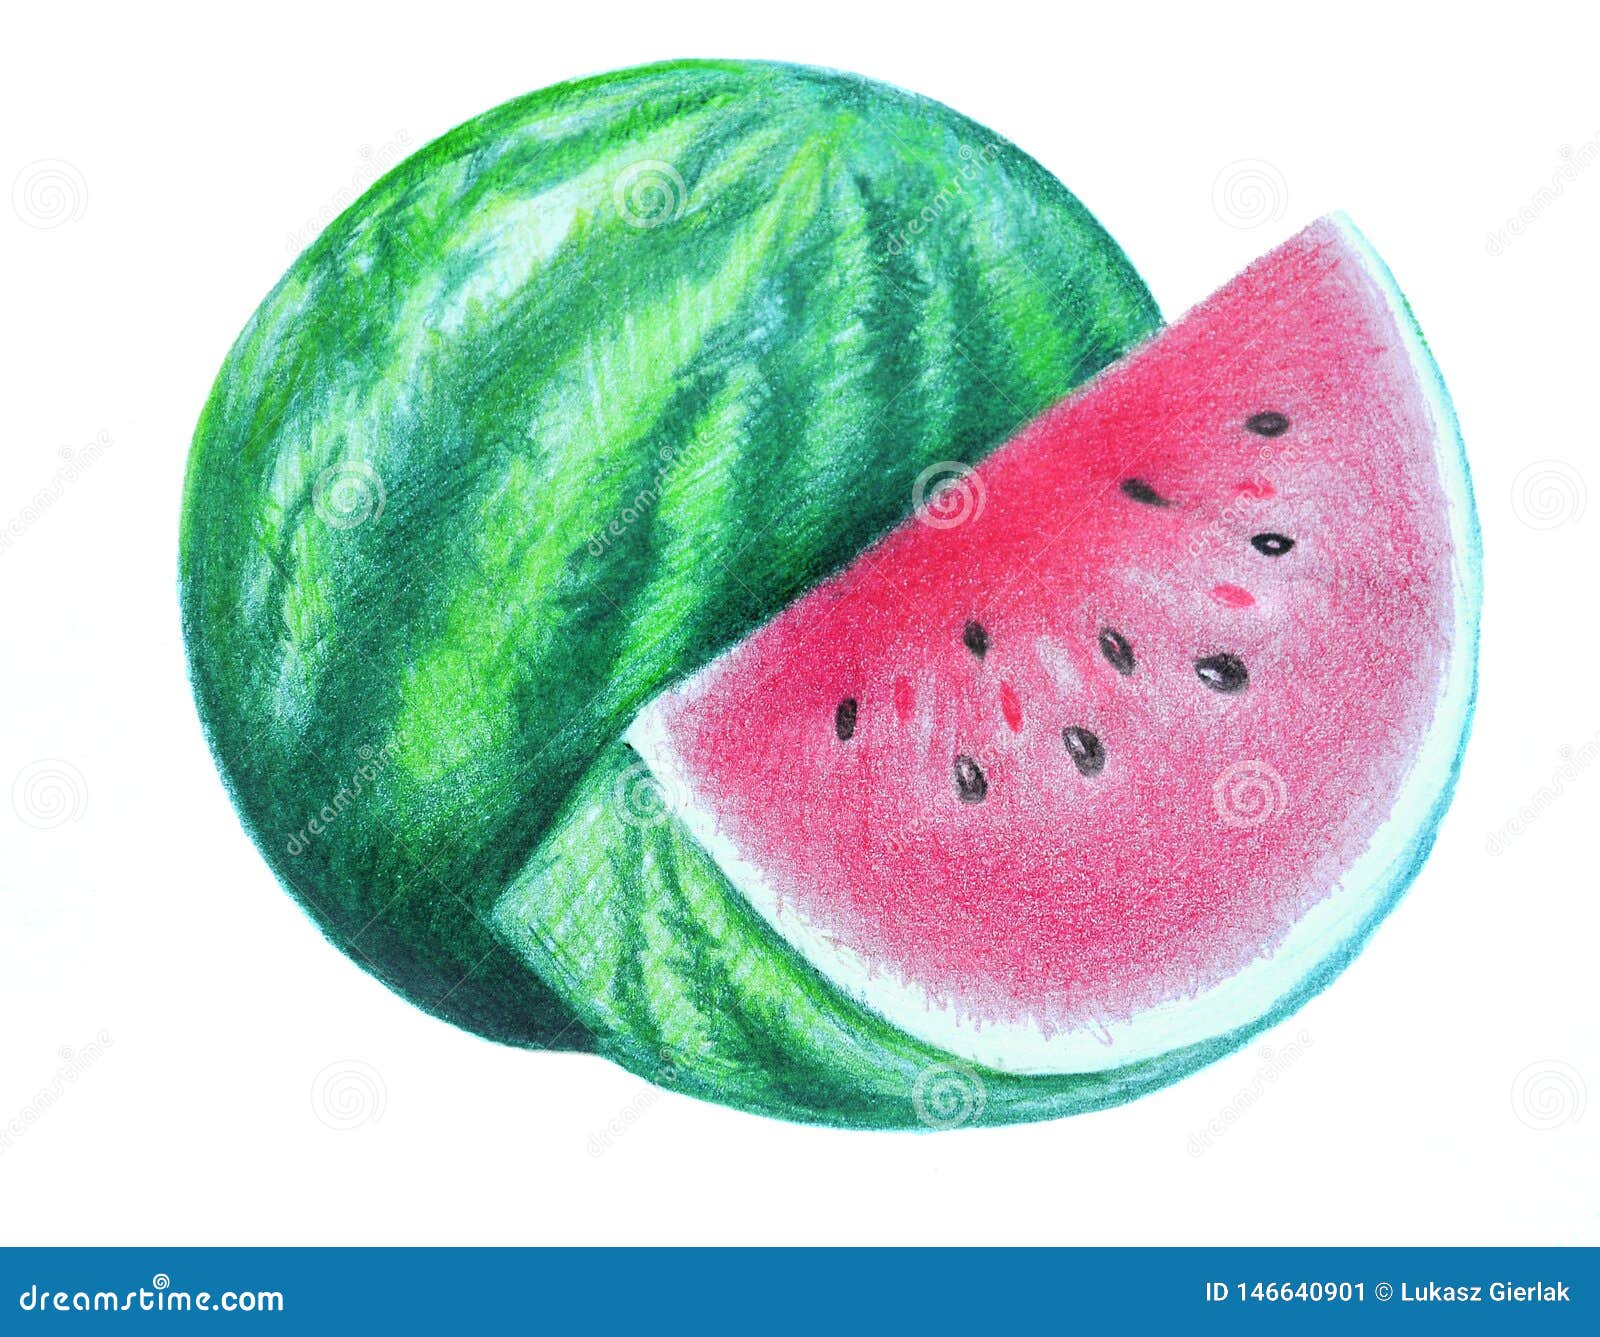 How to draw watermelon / LetsDrawIt